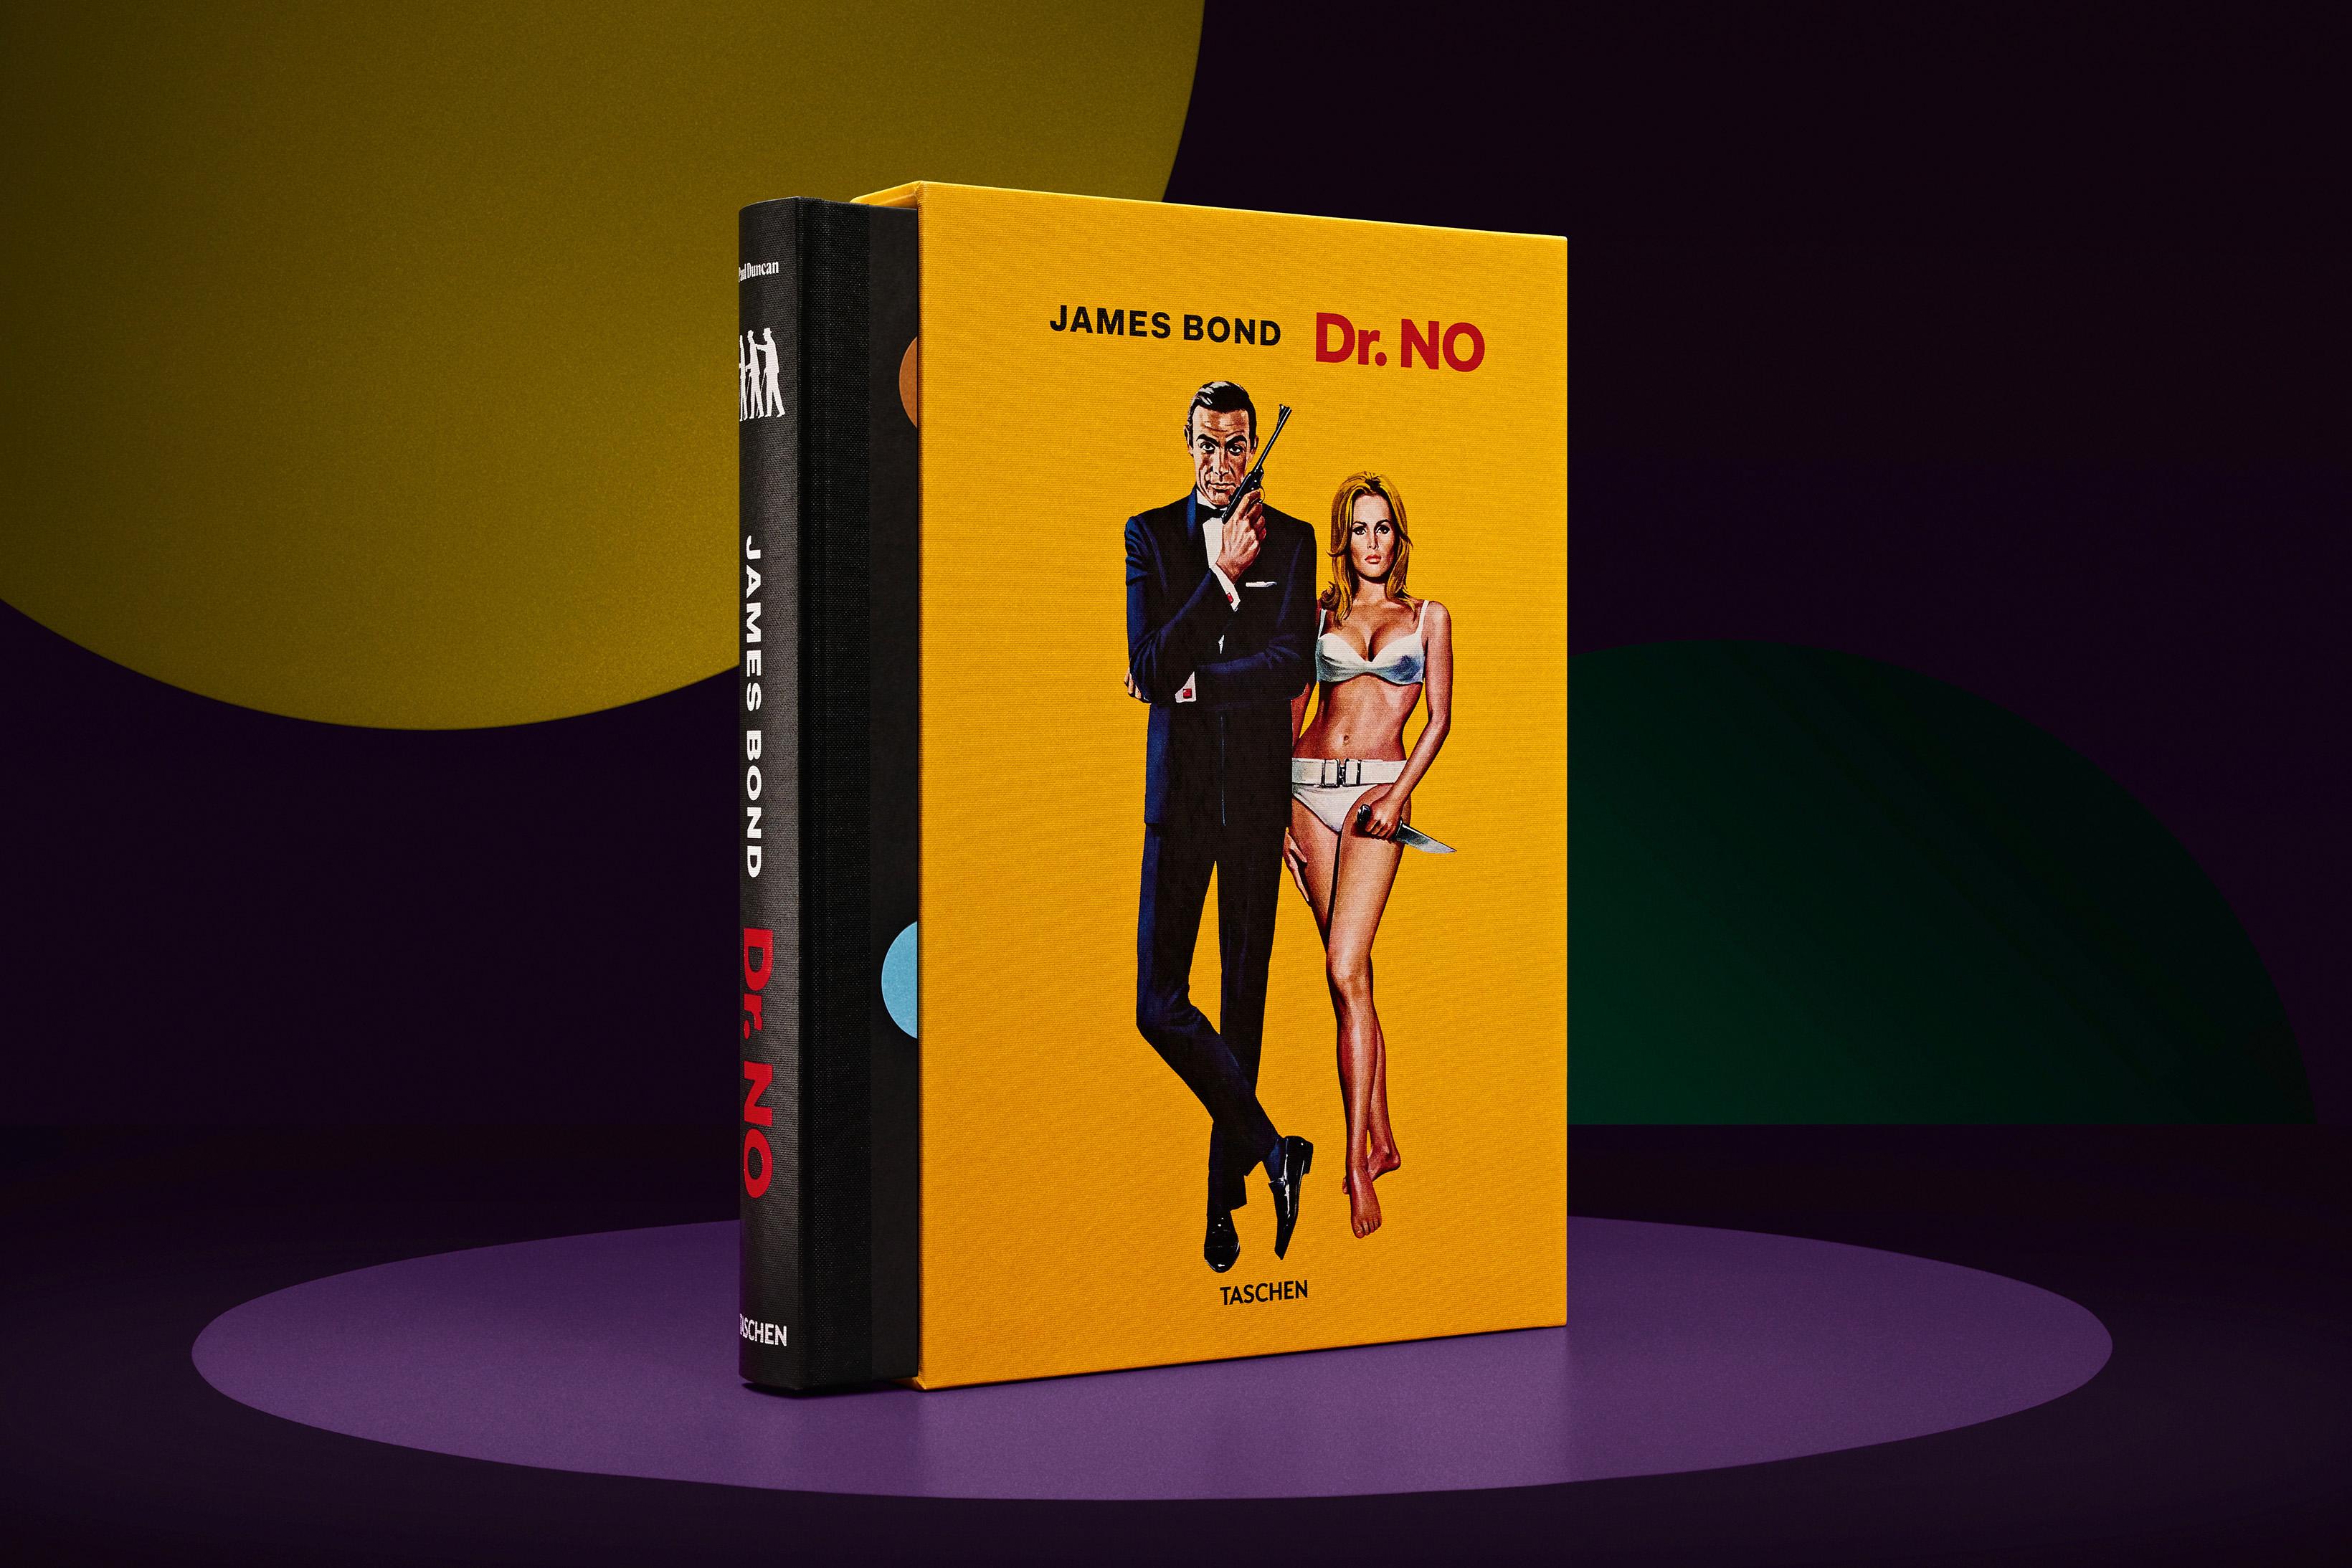 James Bond Dr. No. ‘Publicity Portrait’ 1962. Limited Ed ChromaLuxe Print & Book For Sale 4